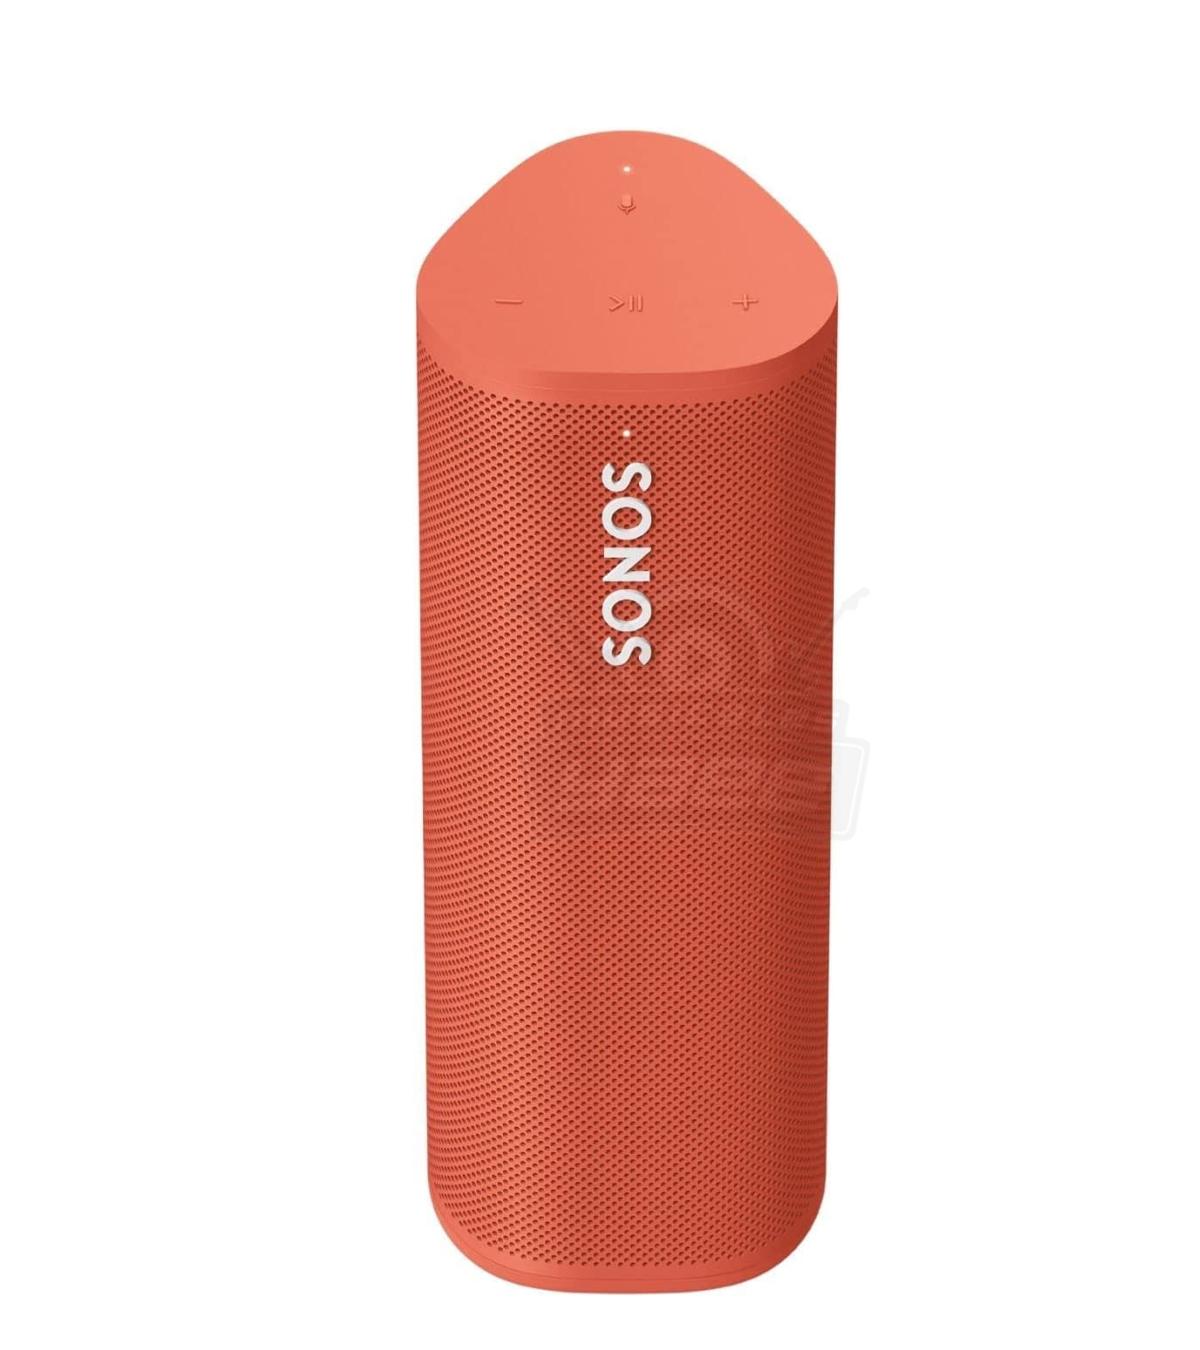 Sonos Roam altavoz inteligente de baterias de interiores y exteriores blanco